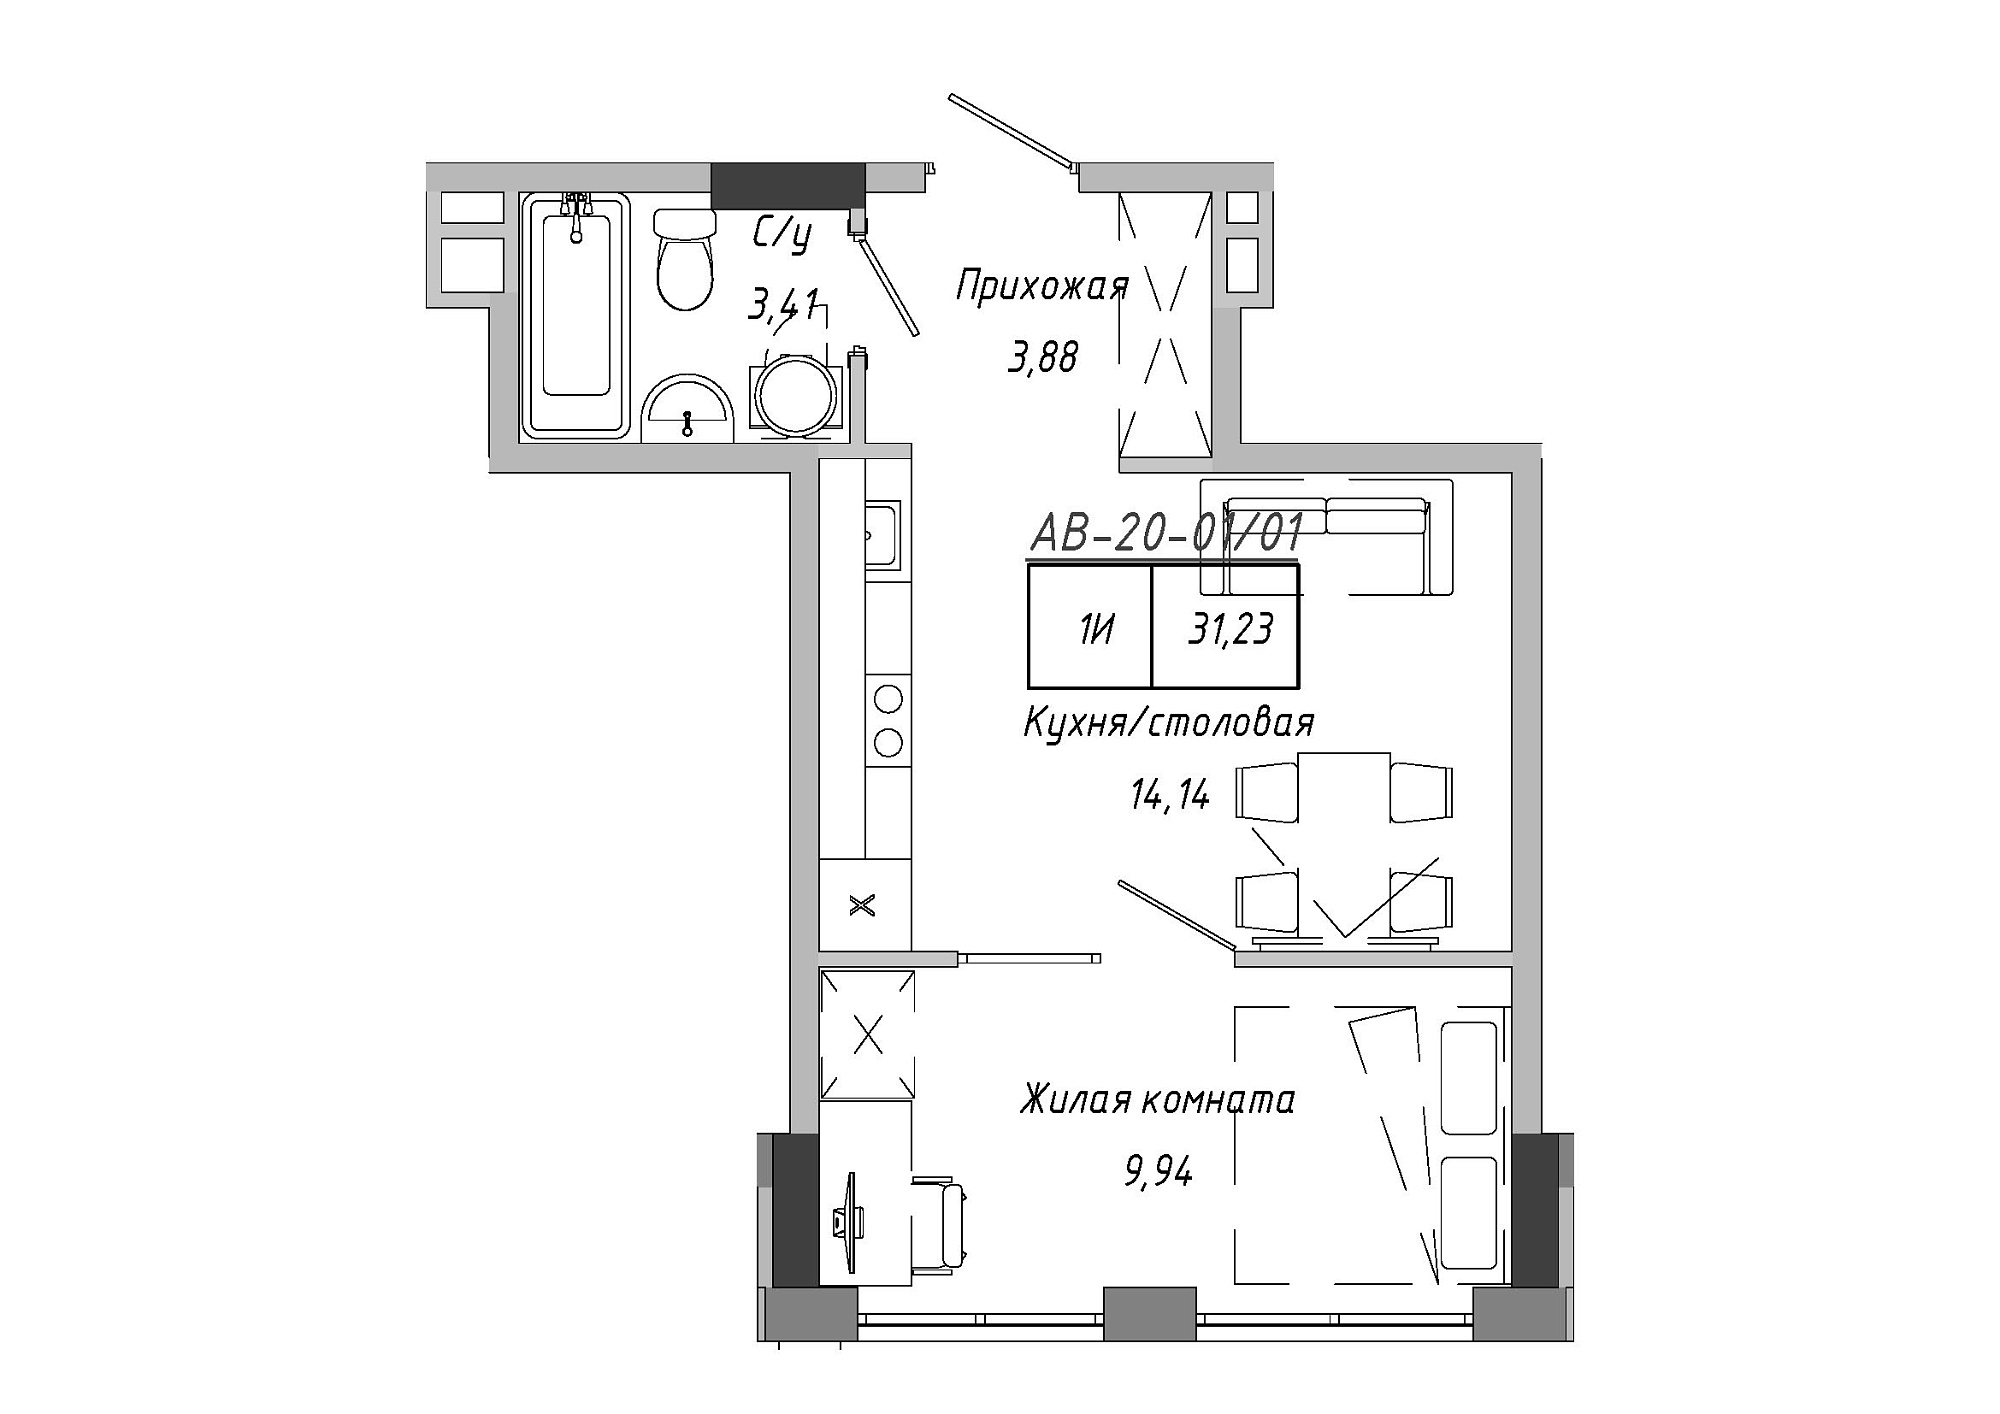 Планировка 1-к квартира площей 31.23м2, AB-20-01/00001.